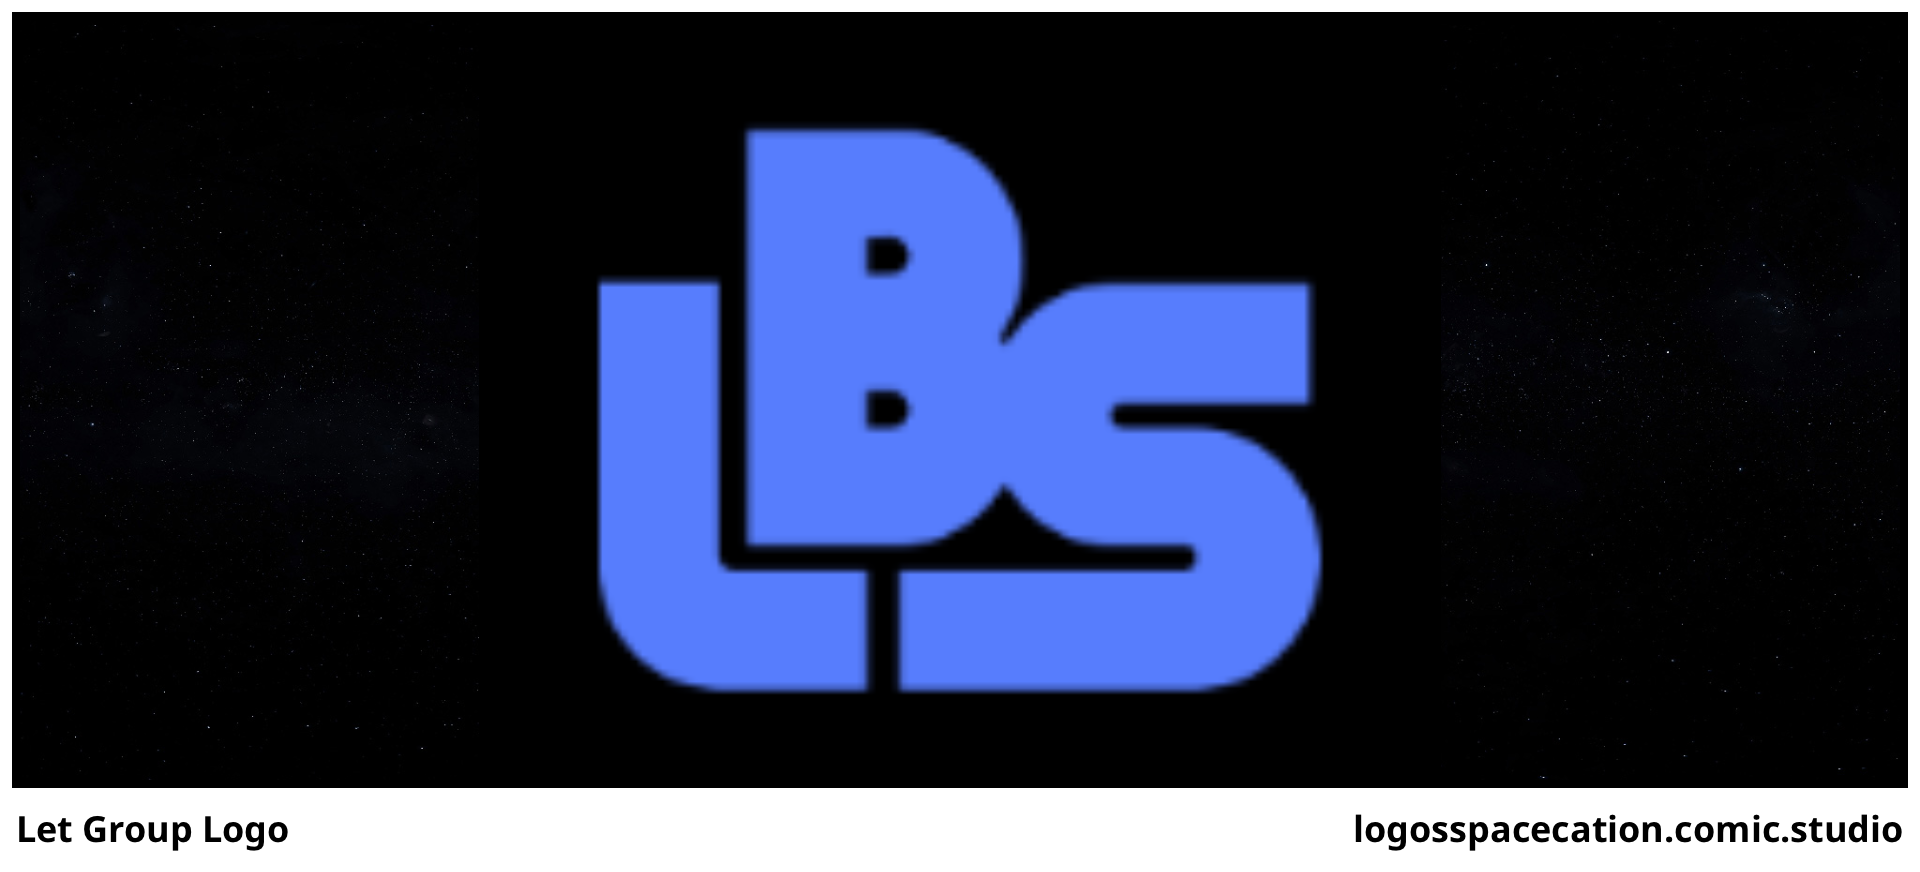 Let Group Logo